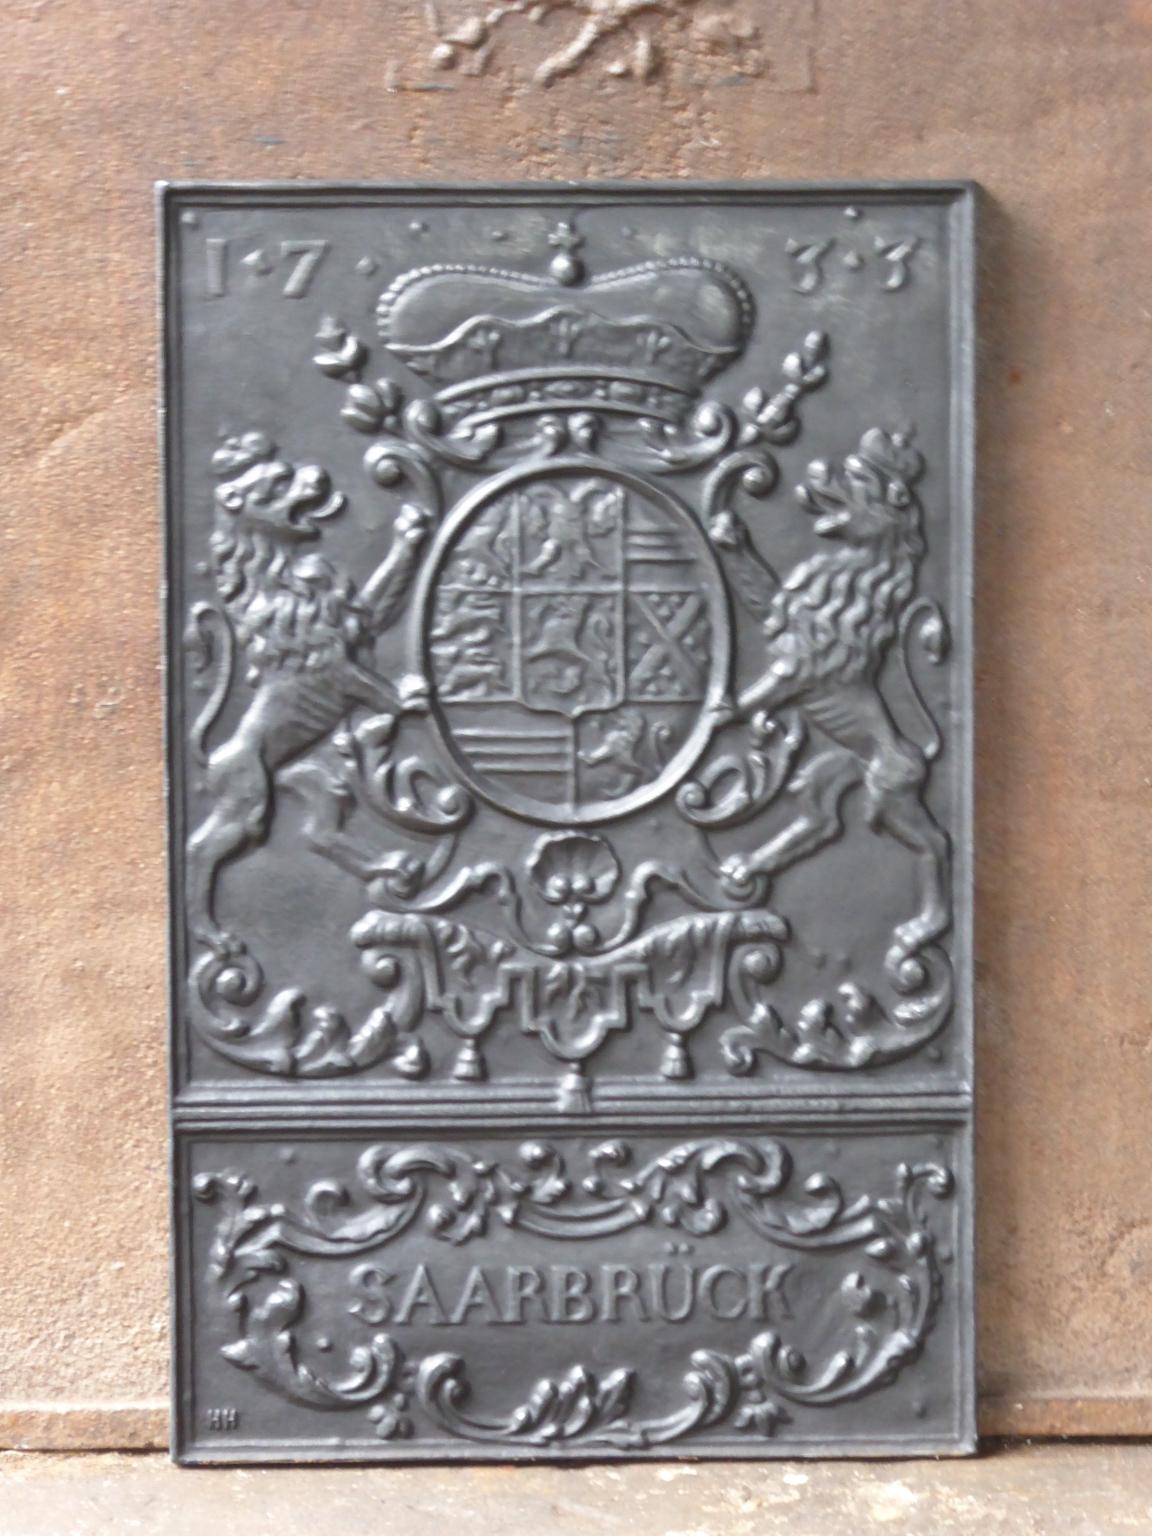 deutsche Kaminplatte im Louis-XIV-Stil des 20. Jahrhunderts mit einem unbekannten Wappen. 

Die Feuerrückwand ist aus Gusseisen und hat eine schwarze / zinnfarbene Patina. Es ist in einem guten Zustand und hat keine Risse.







